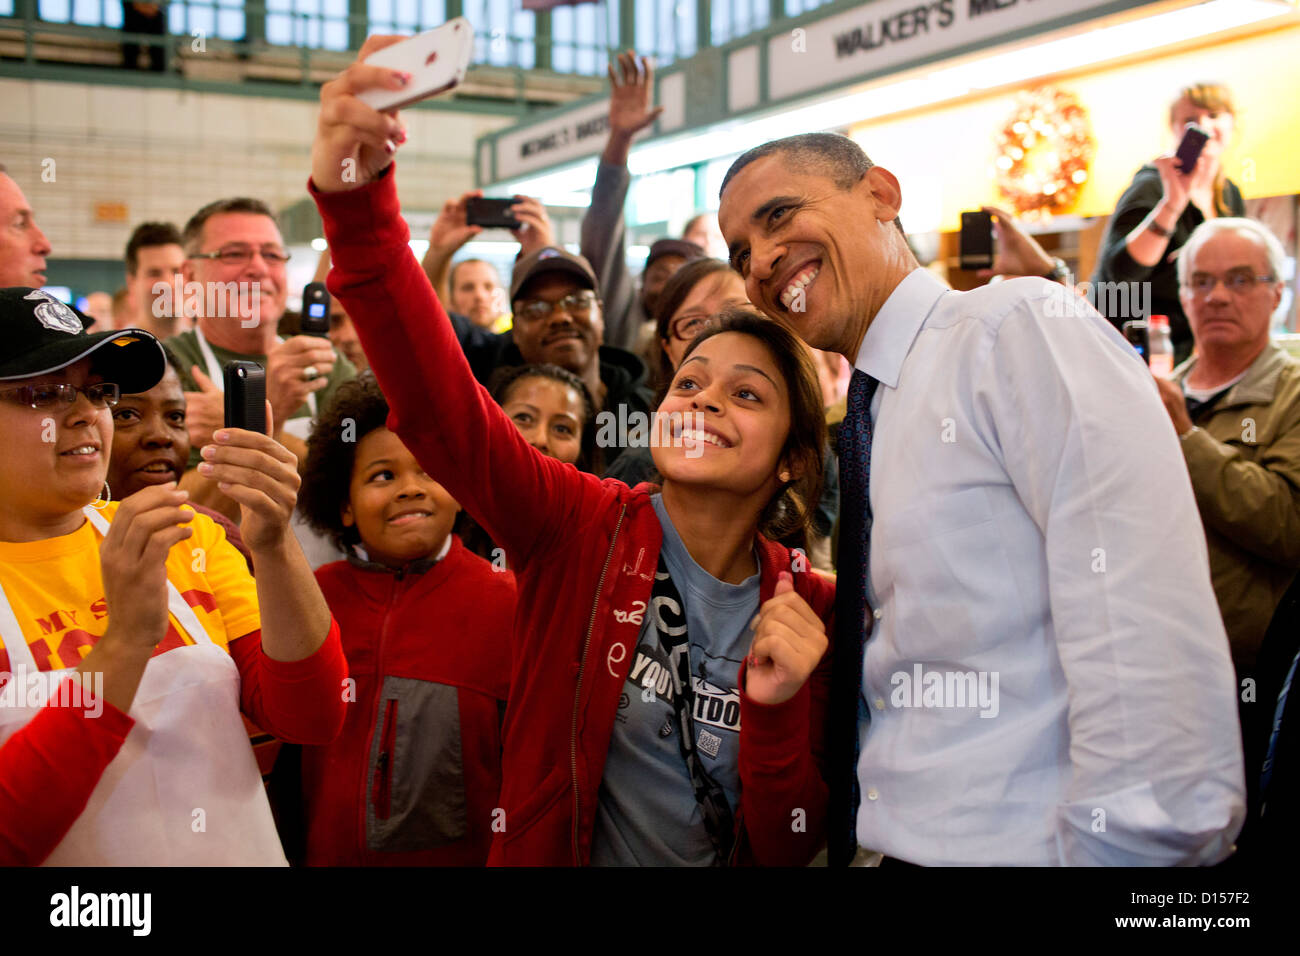 US-Präsident Barack Obama hat sein Bild genommen mit einem Benutzer bei der Werbetätigkeit auf der Westseite Markt 5. Oktober 2012 in Cleveland, Ohio. Stockfoto